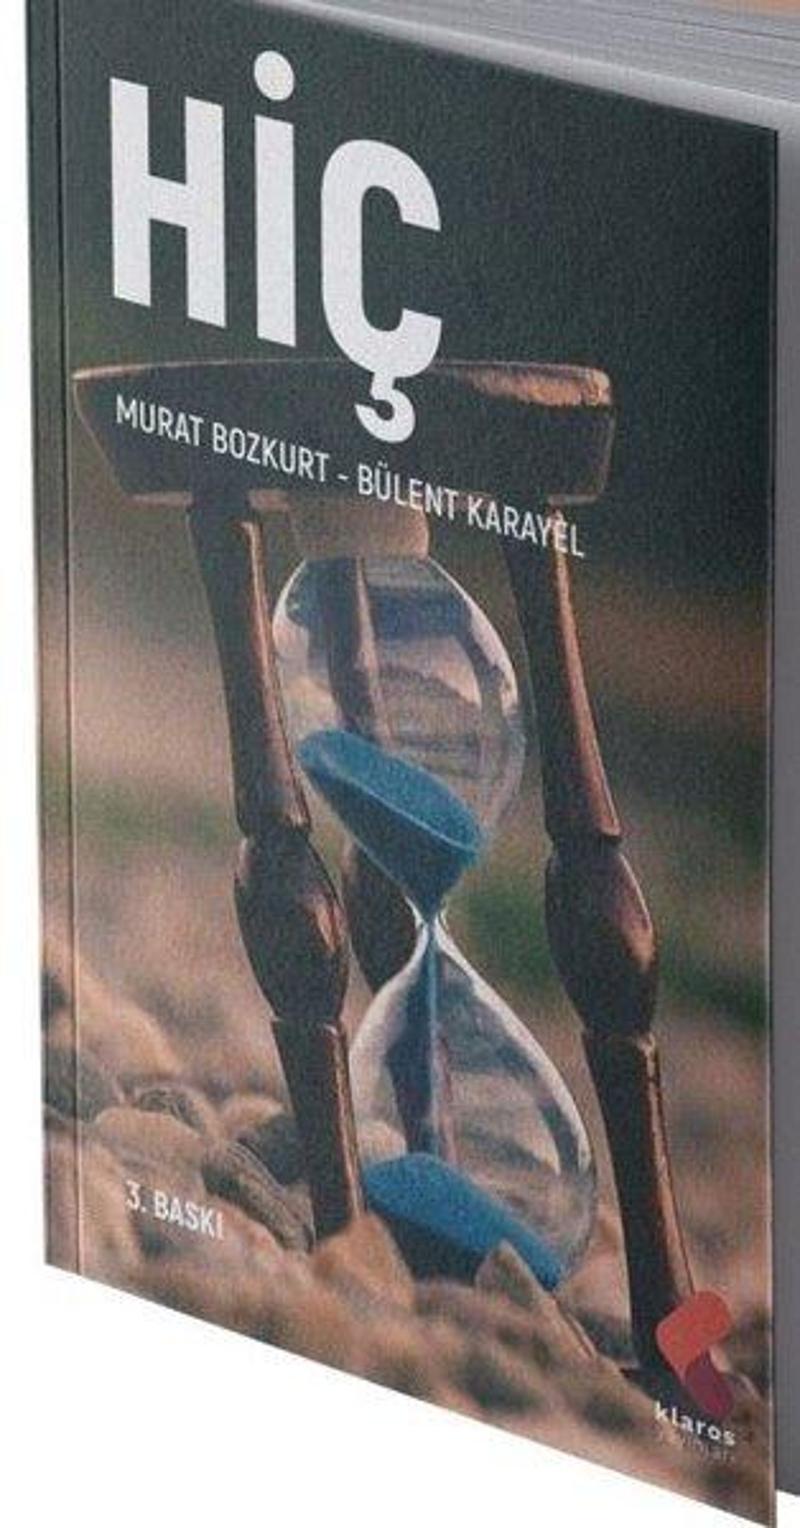 Klaros Yayınları Hiç - Murat Bozkurt